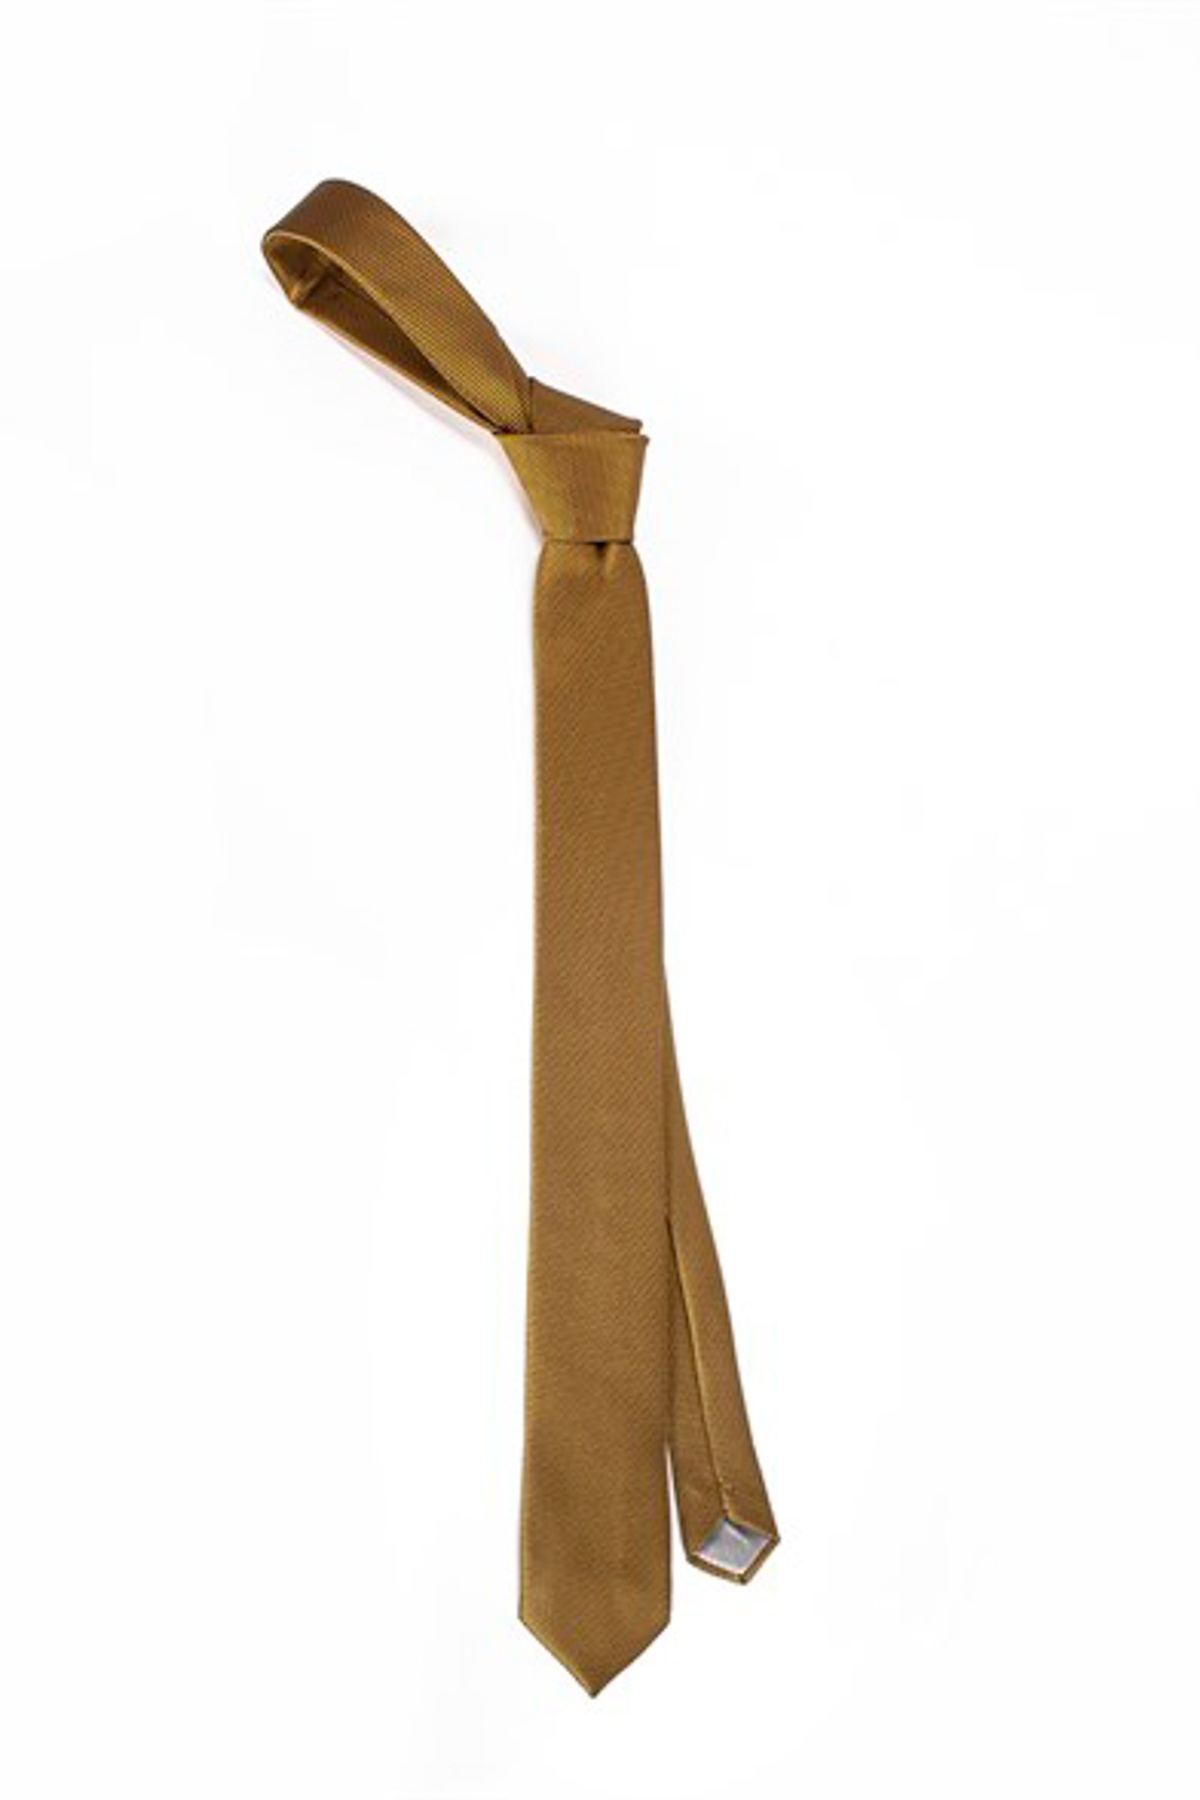 Arany színű anyagában mintás vékony nyakkendő